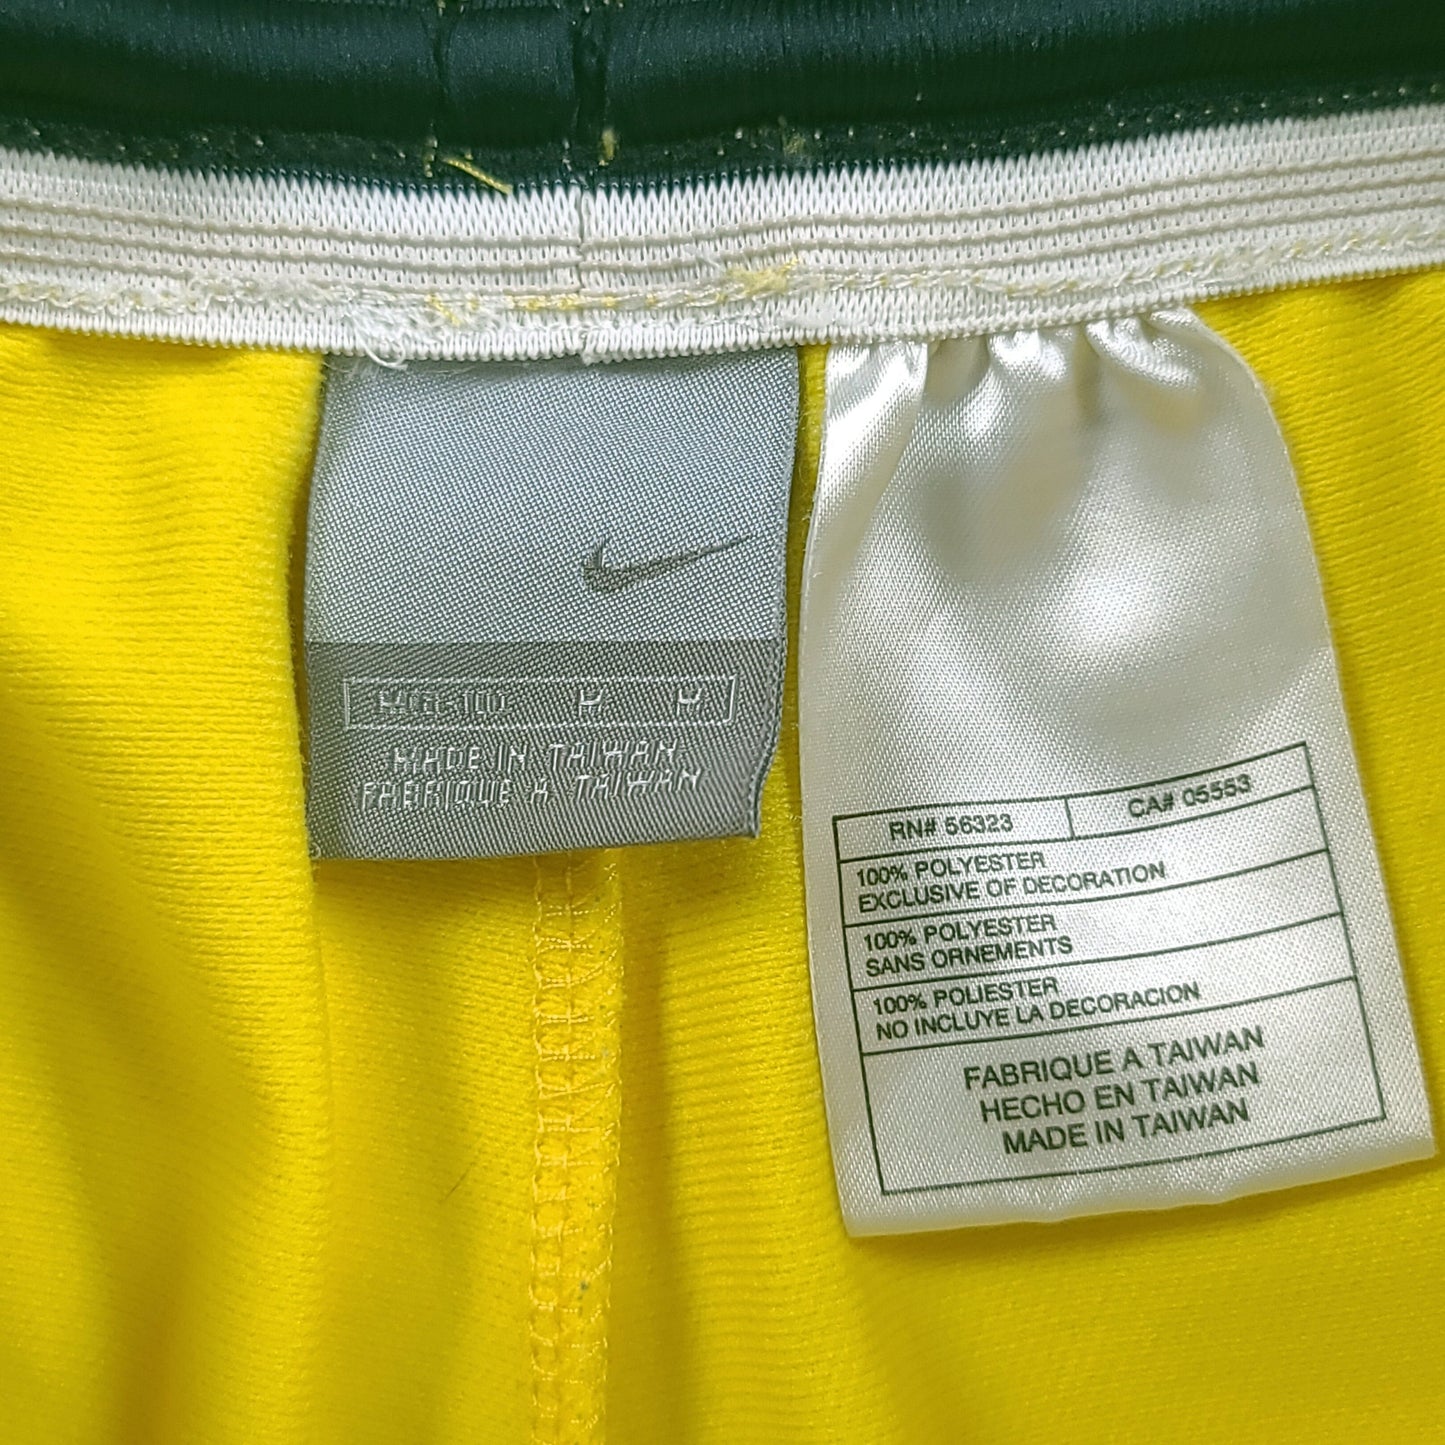 Vintage Nike Yellow Youth Athletic Shorts